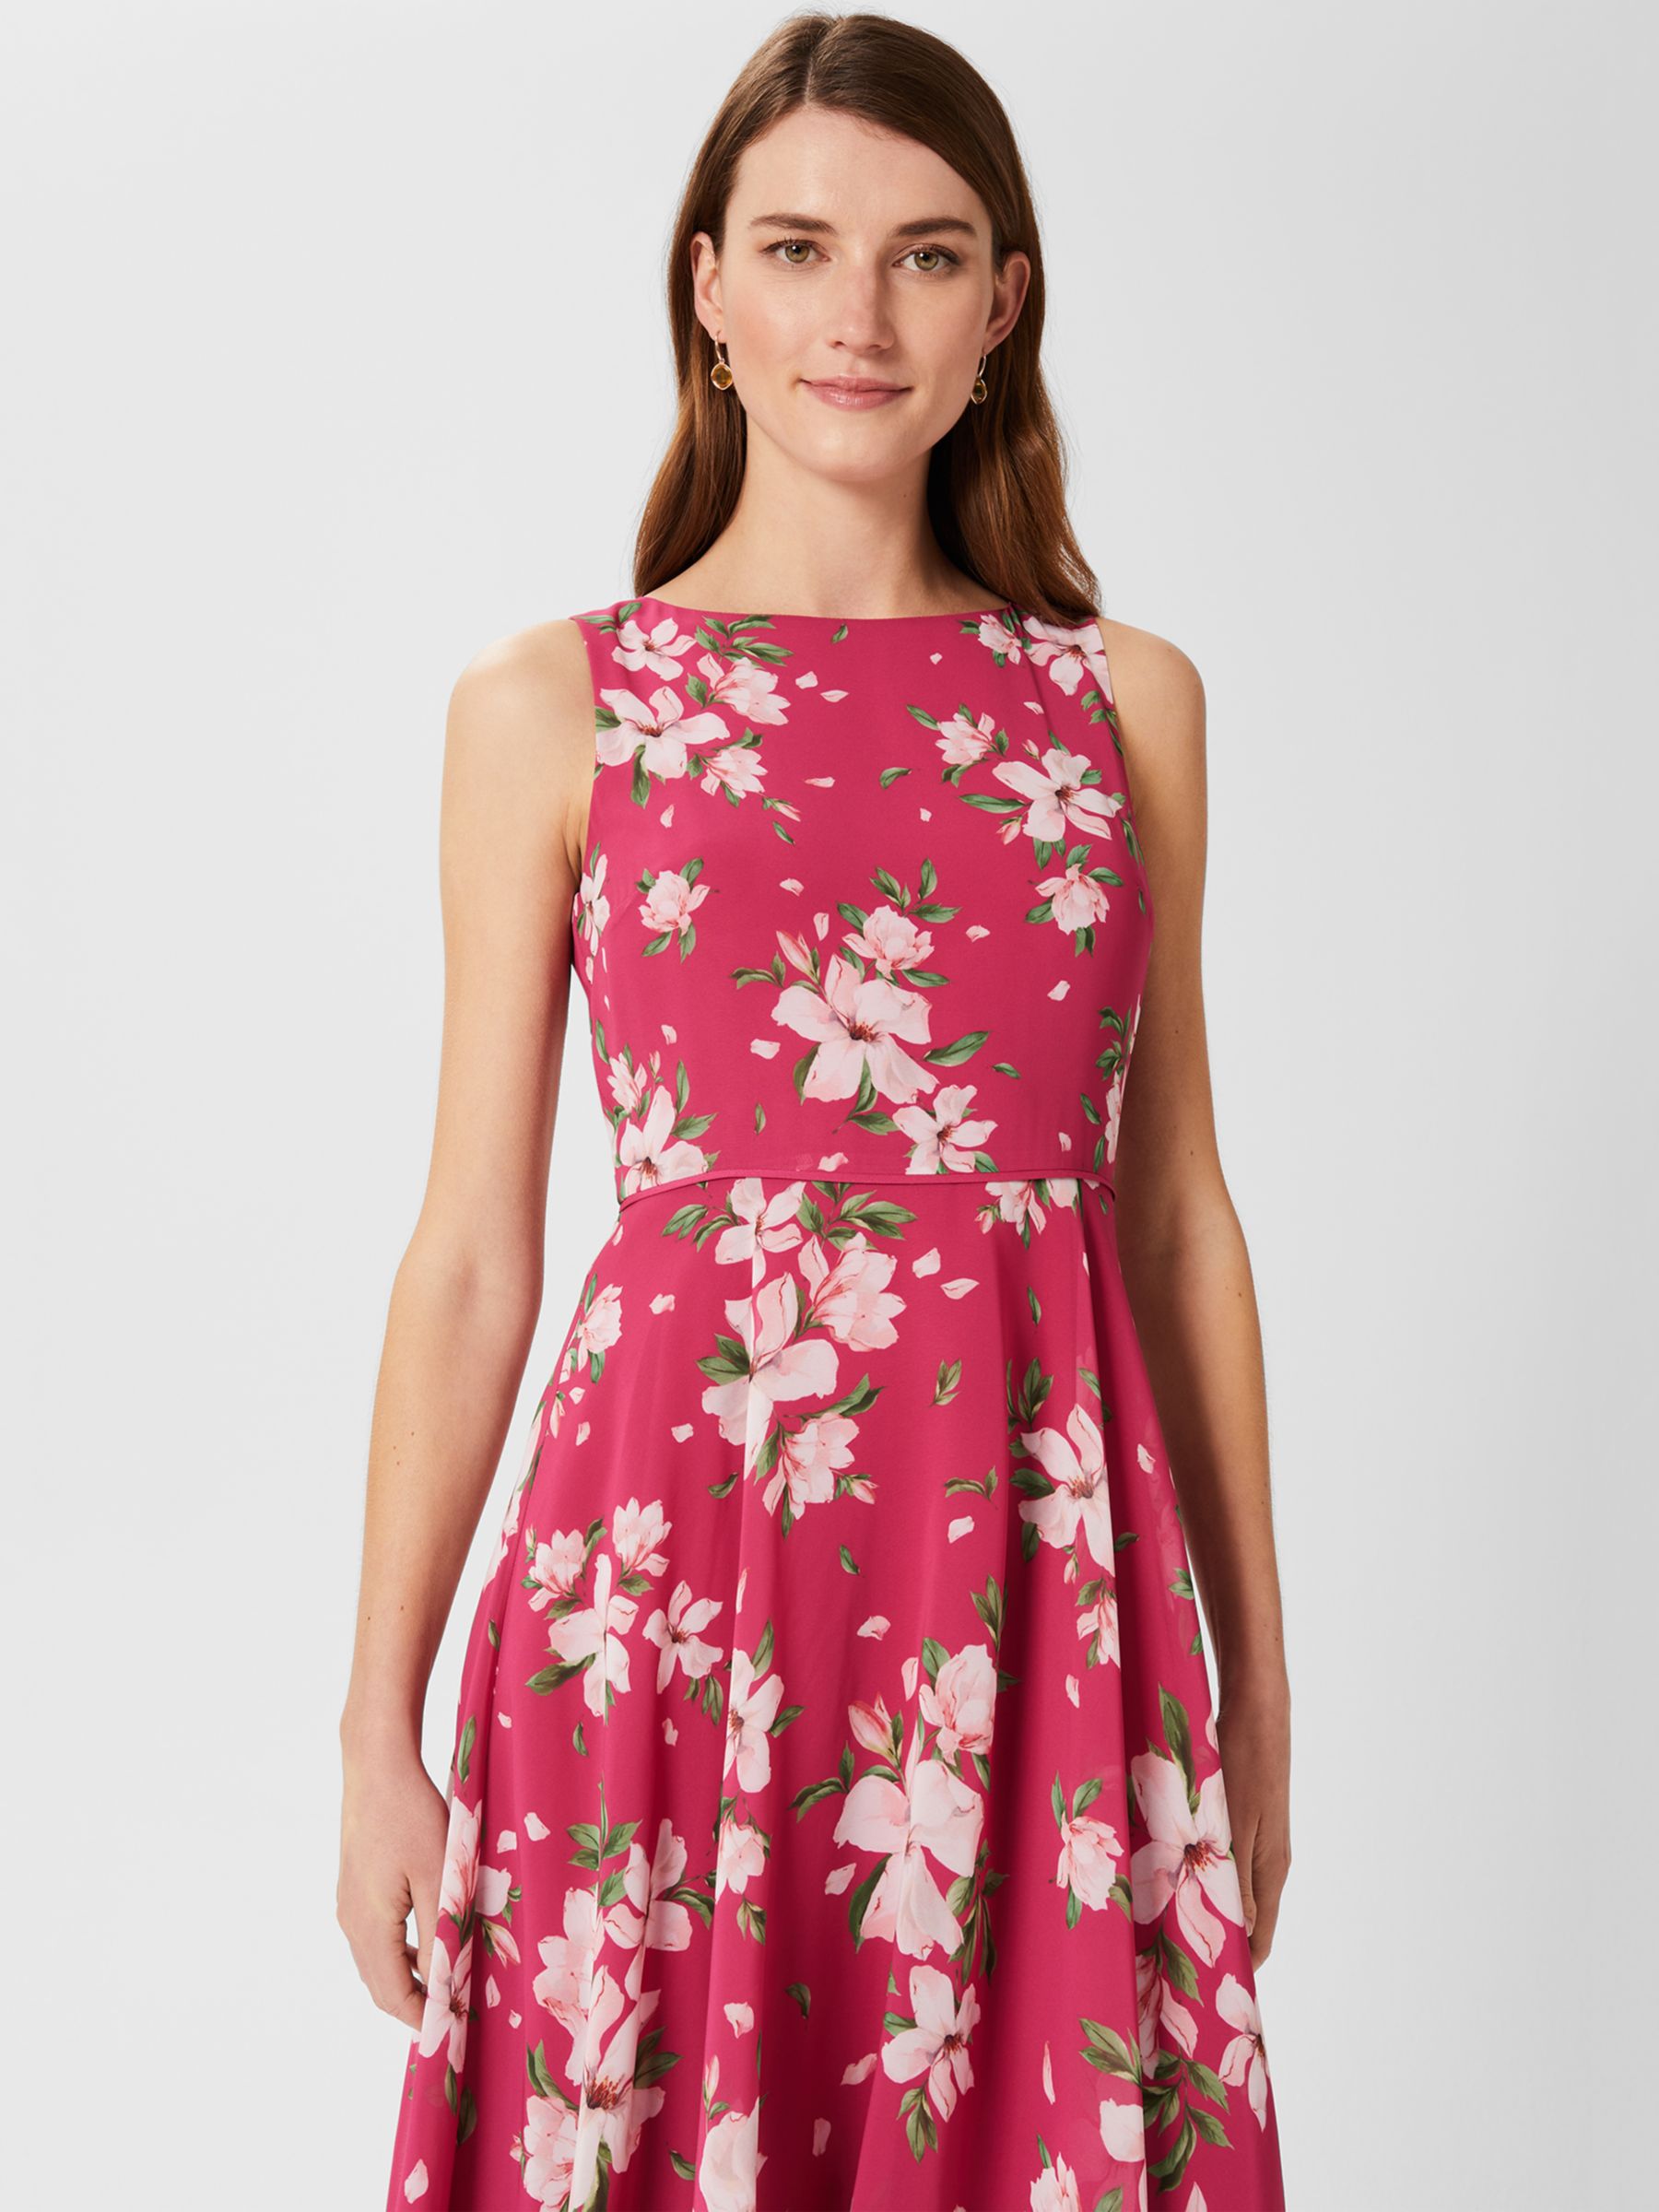 Hobbs Carly Floral Sleeveless Midi Dress, Pink/Multi at John Lewis ...